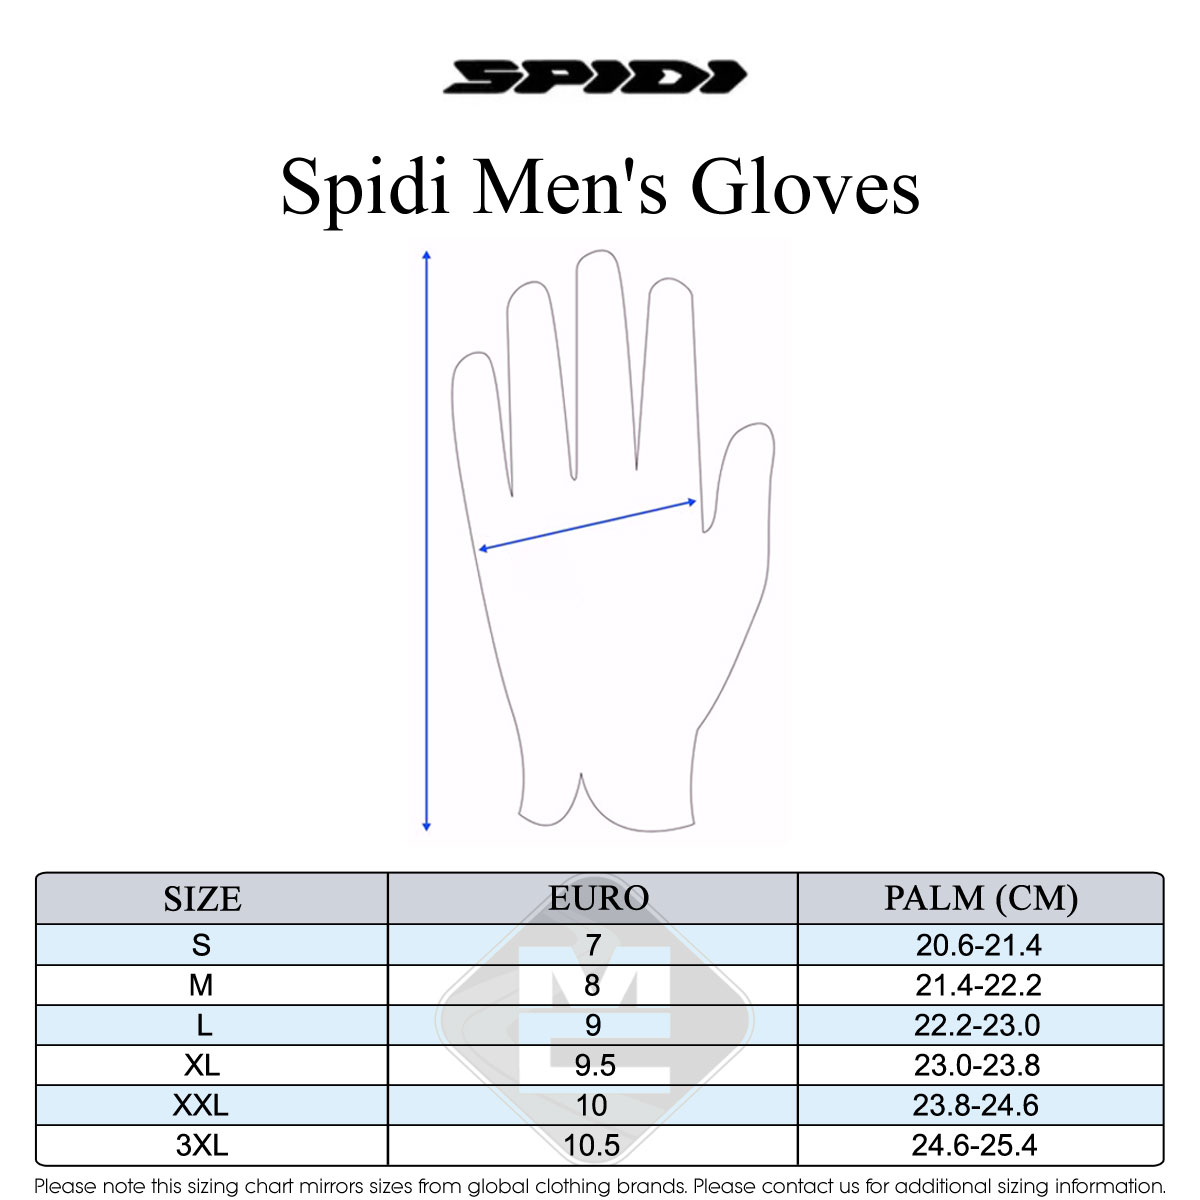 Spidi Men's Size Guide